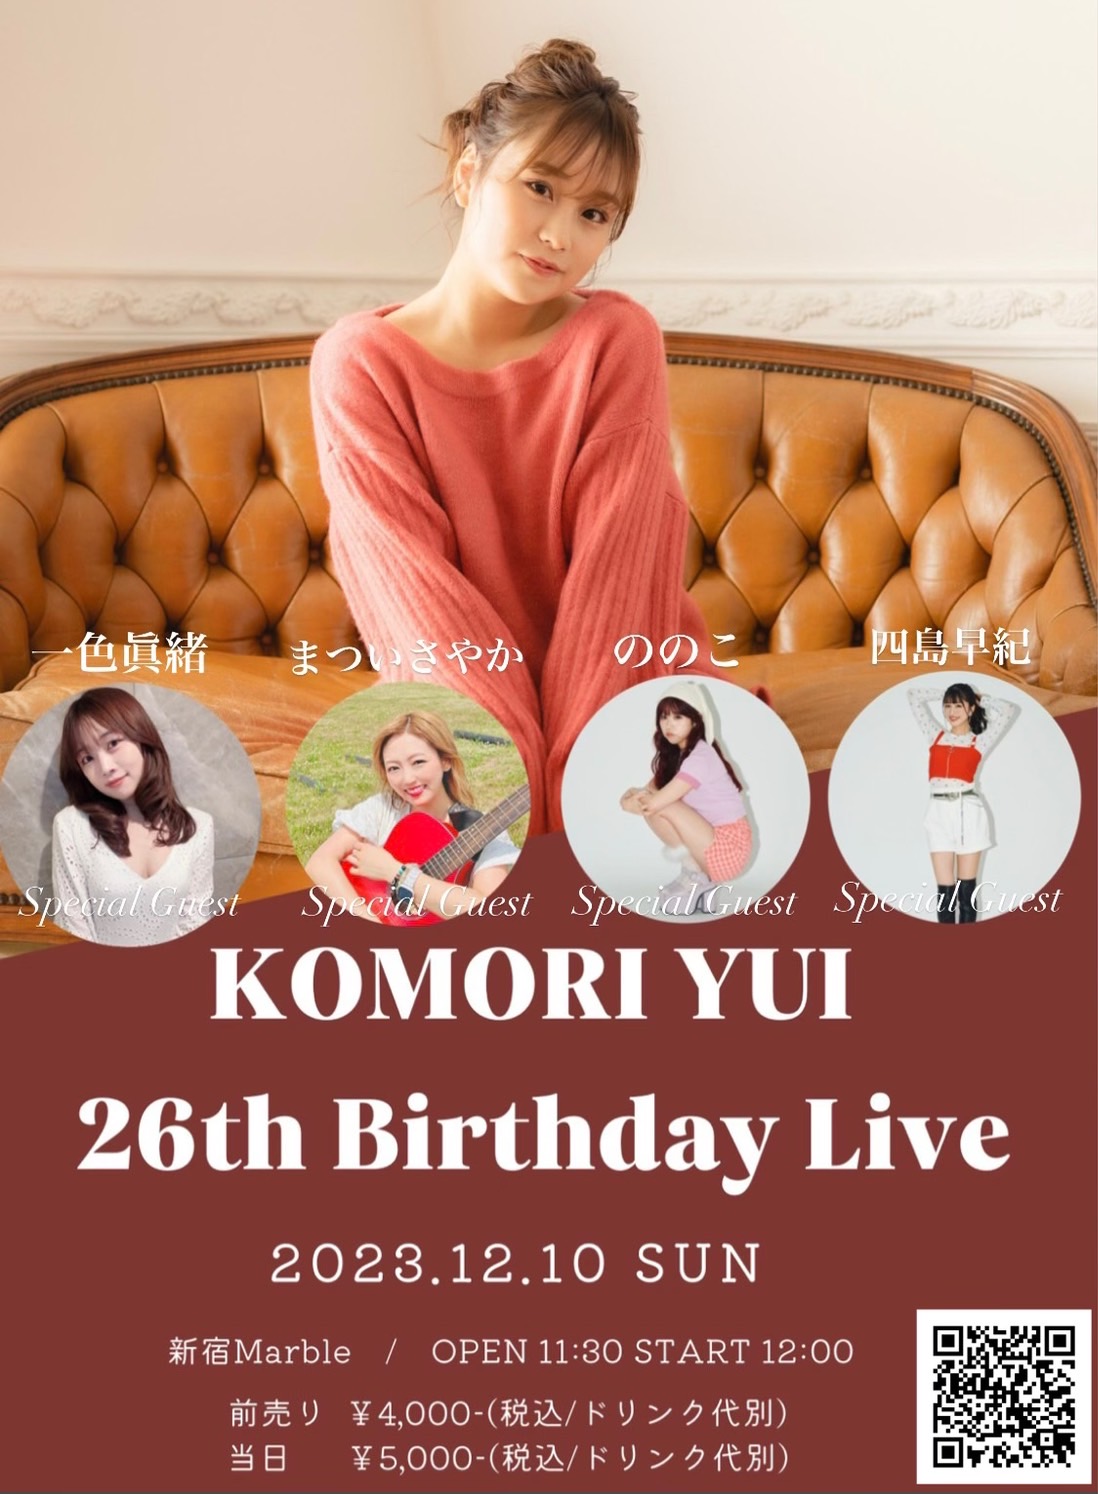 KOMORI YUI 26th Birthday Live